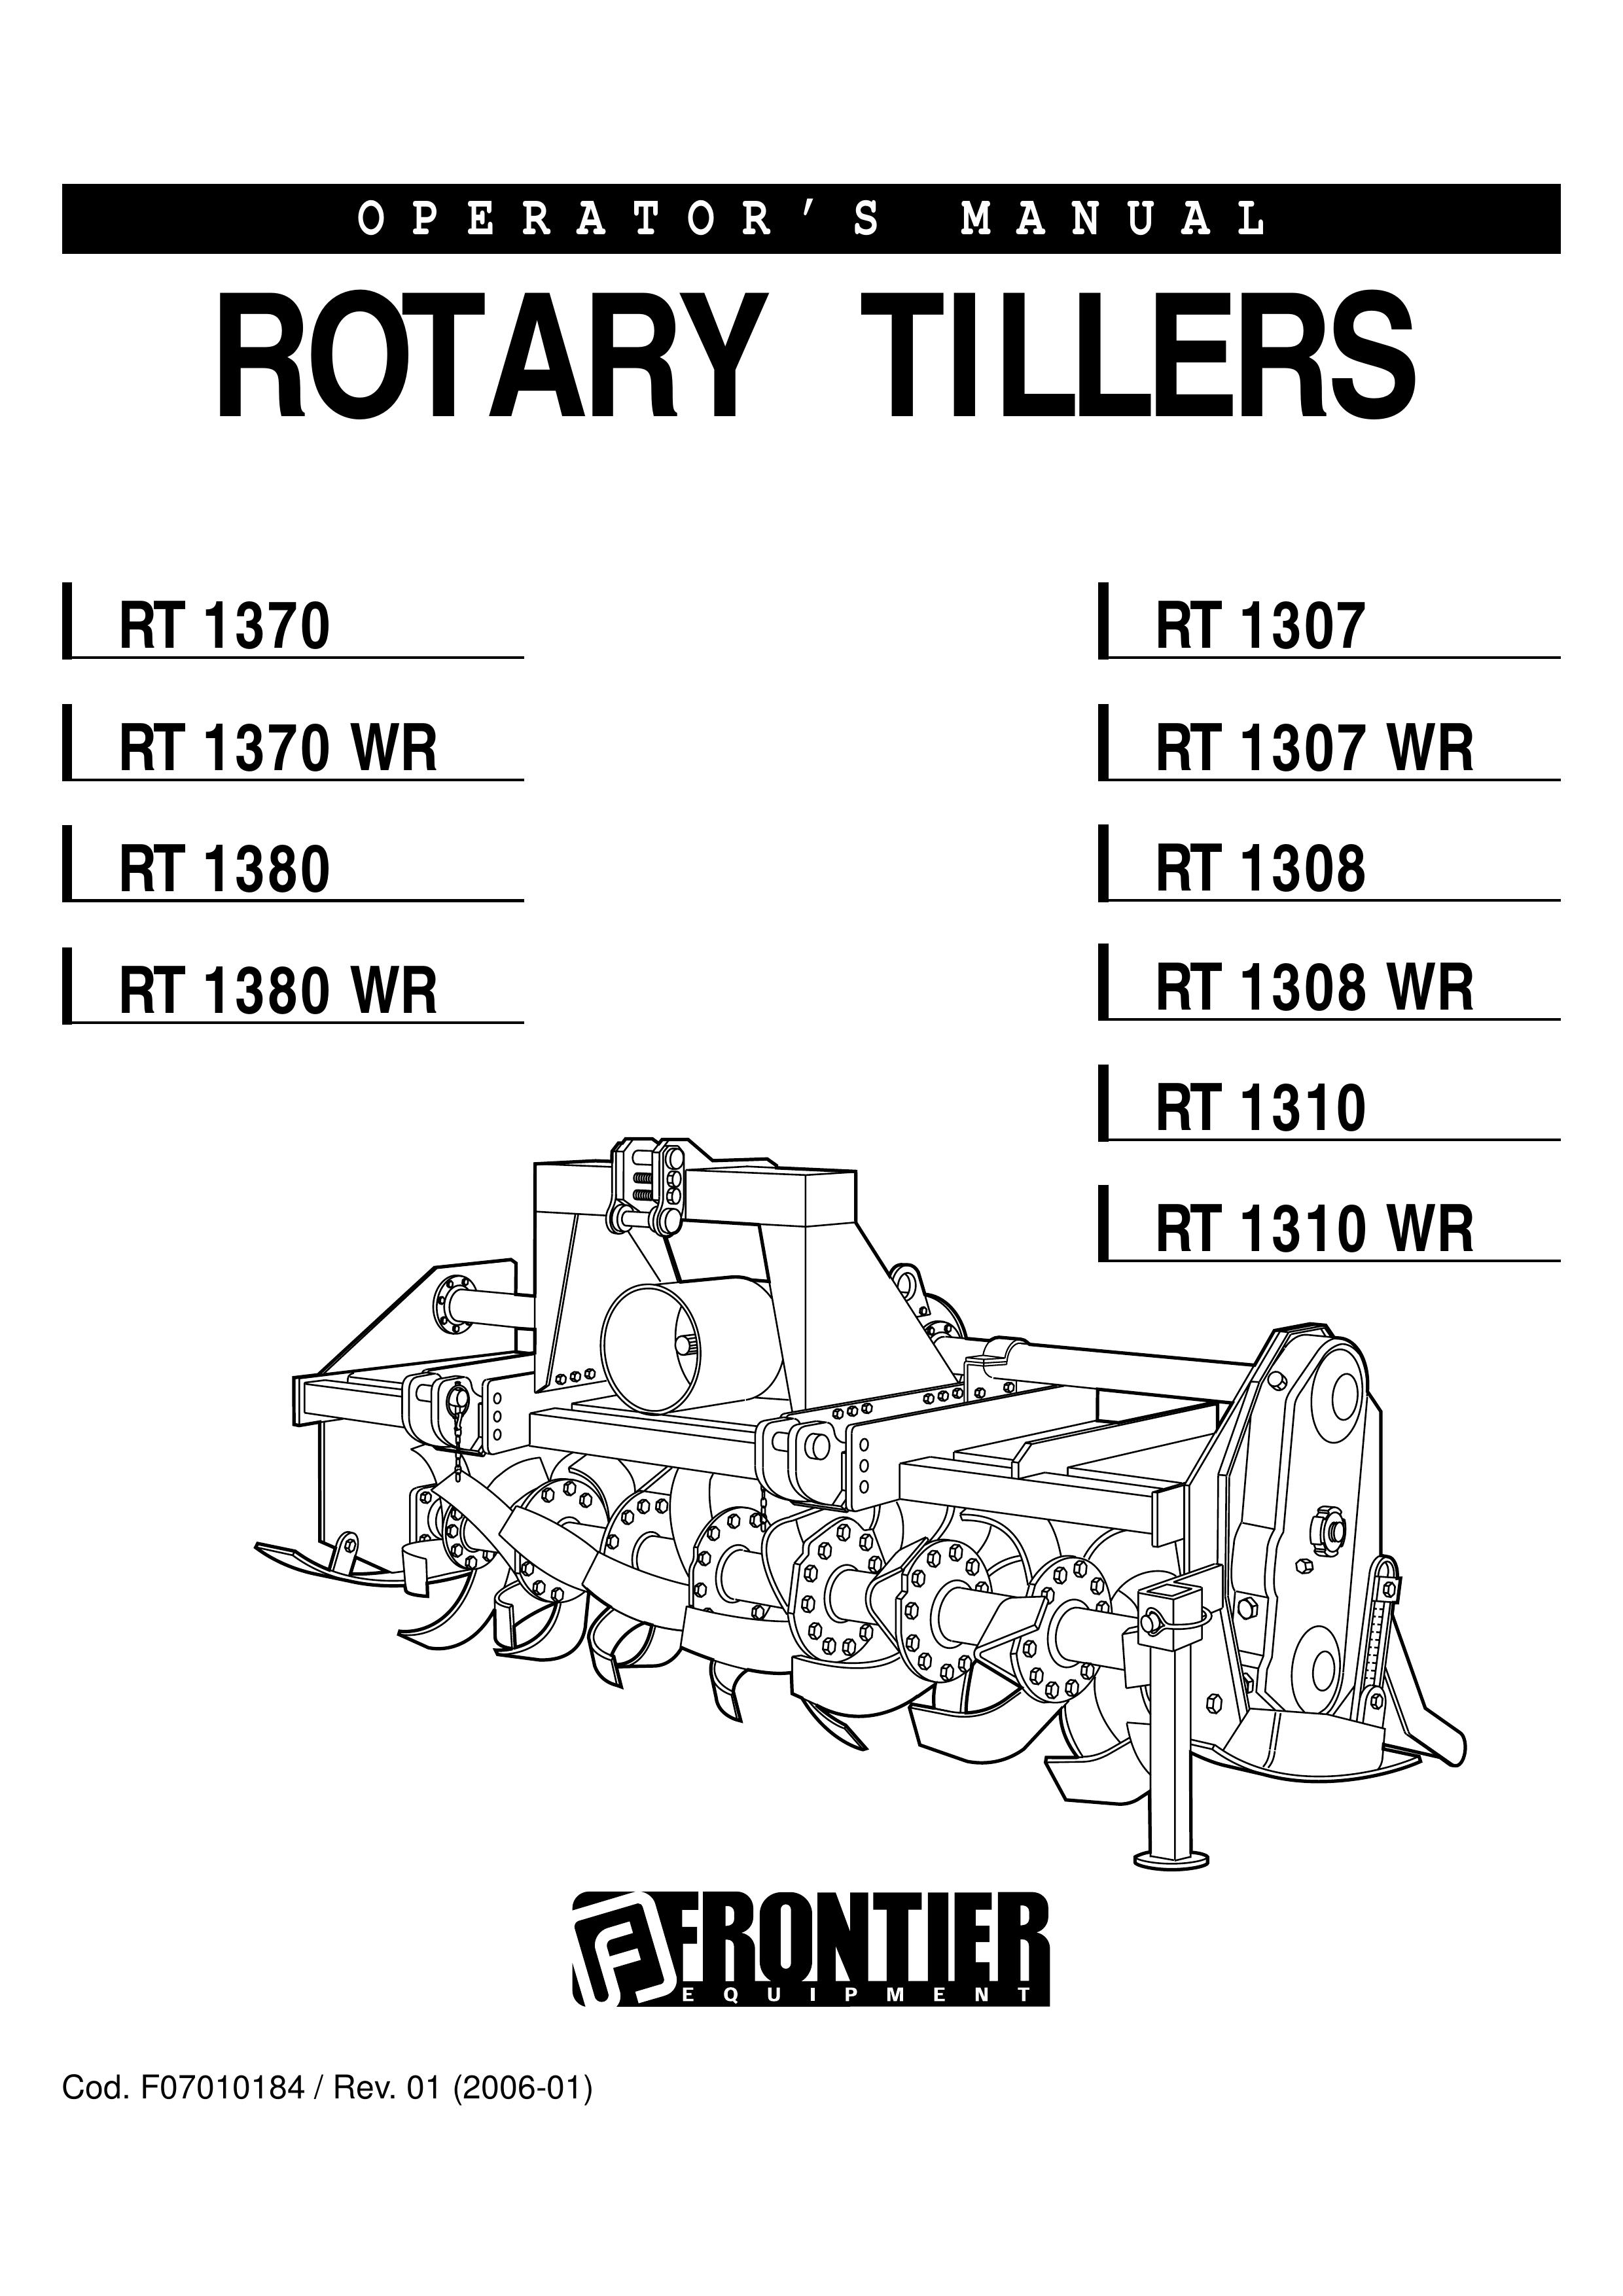 John Deere RT 1370 WR Tiller User Manual